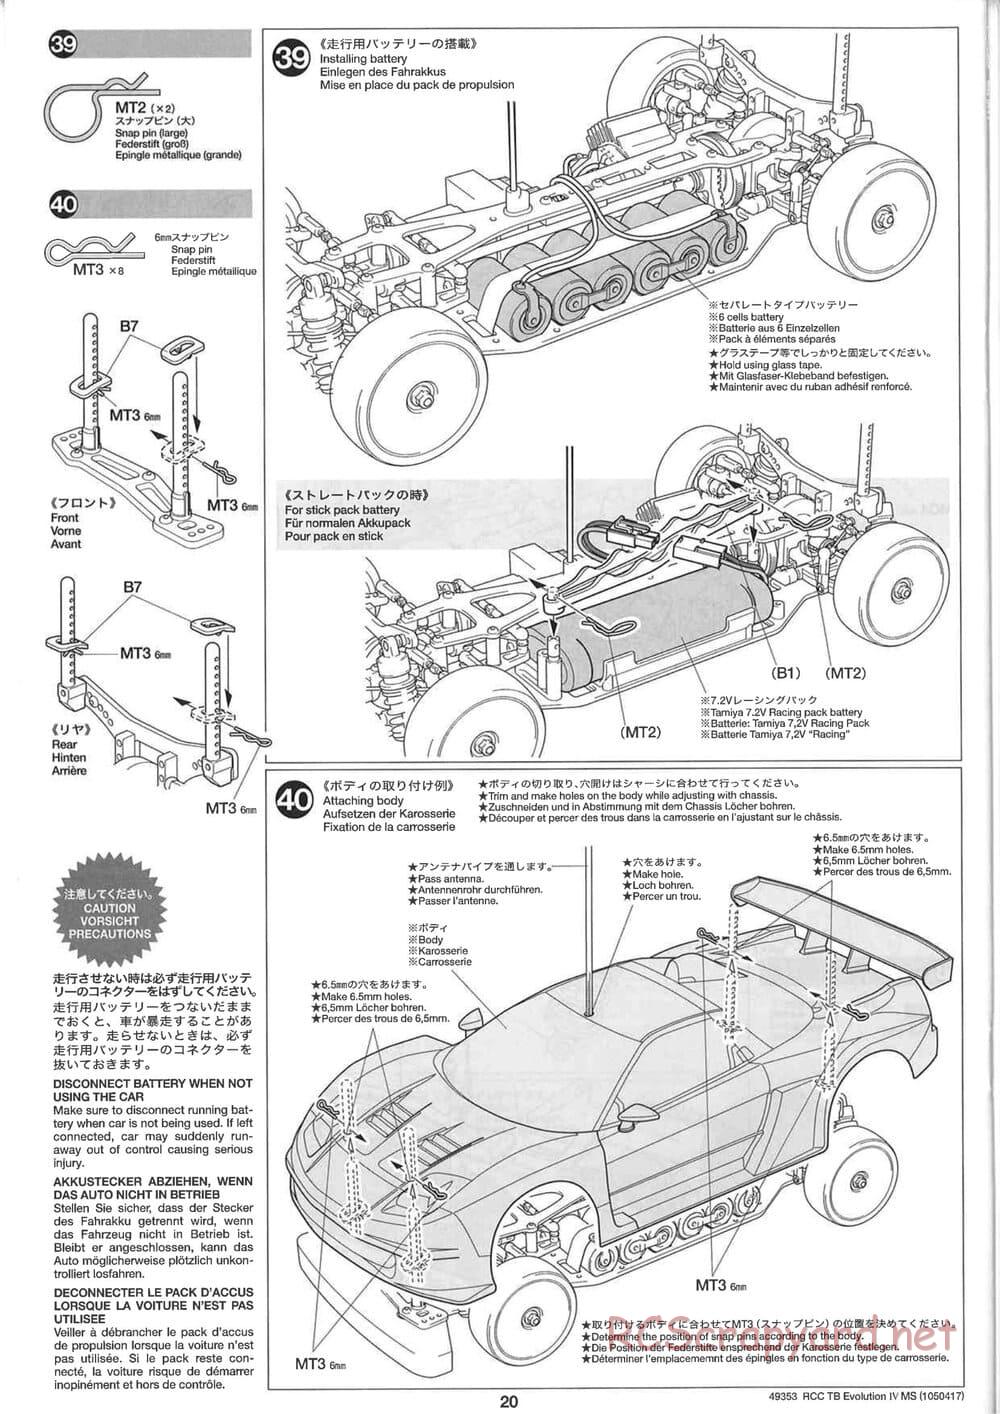 Tamiya - TB Evolution IV MS Chassis - Manual - Page 20